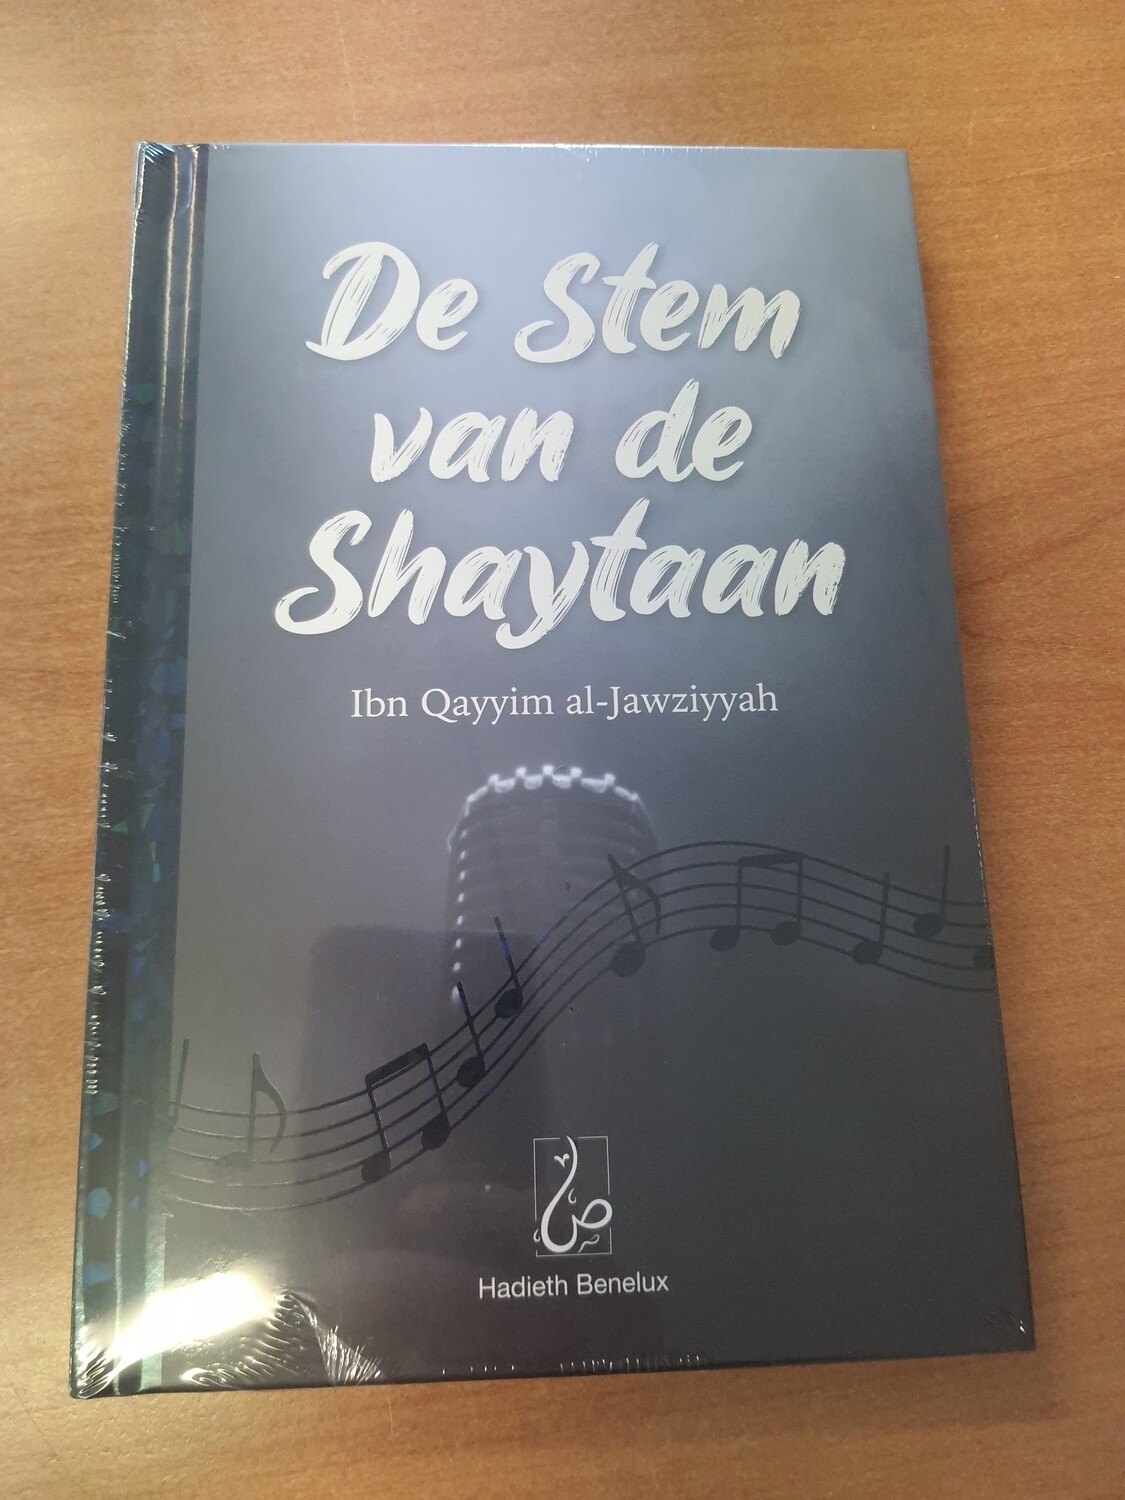 De stem van de shaytaan